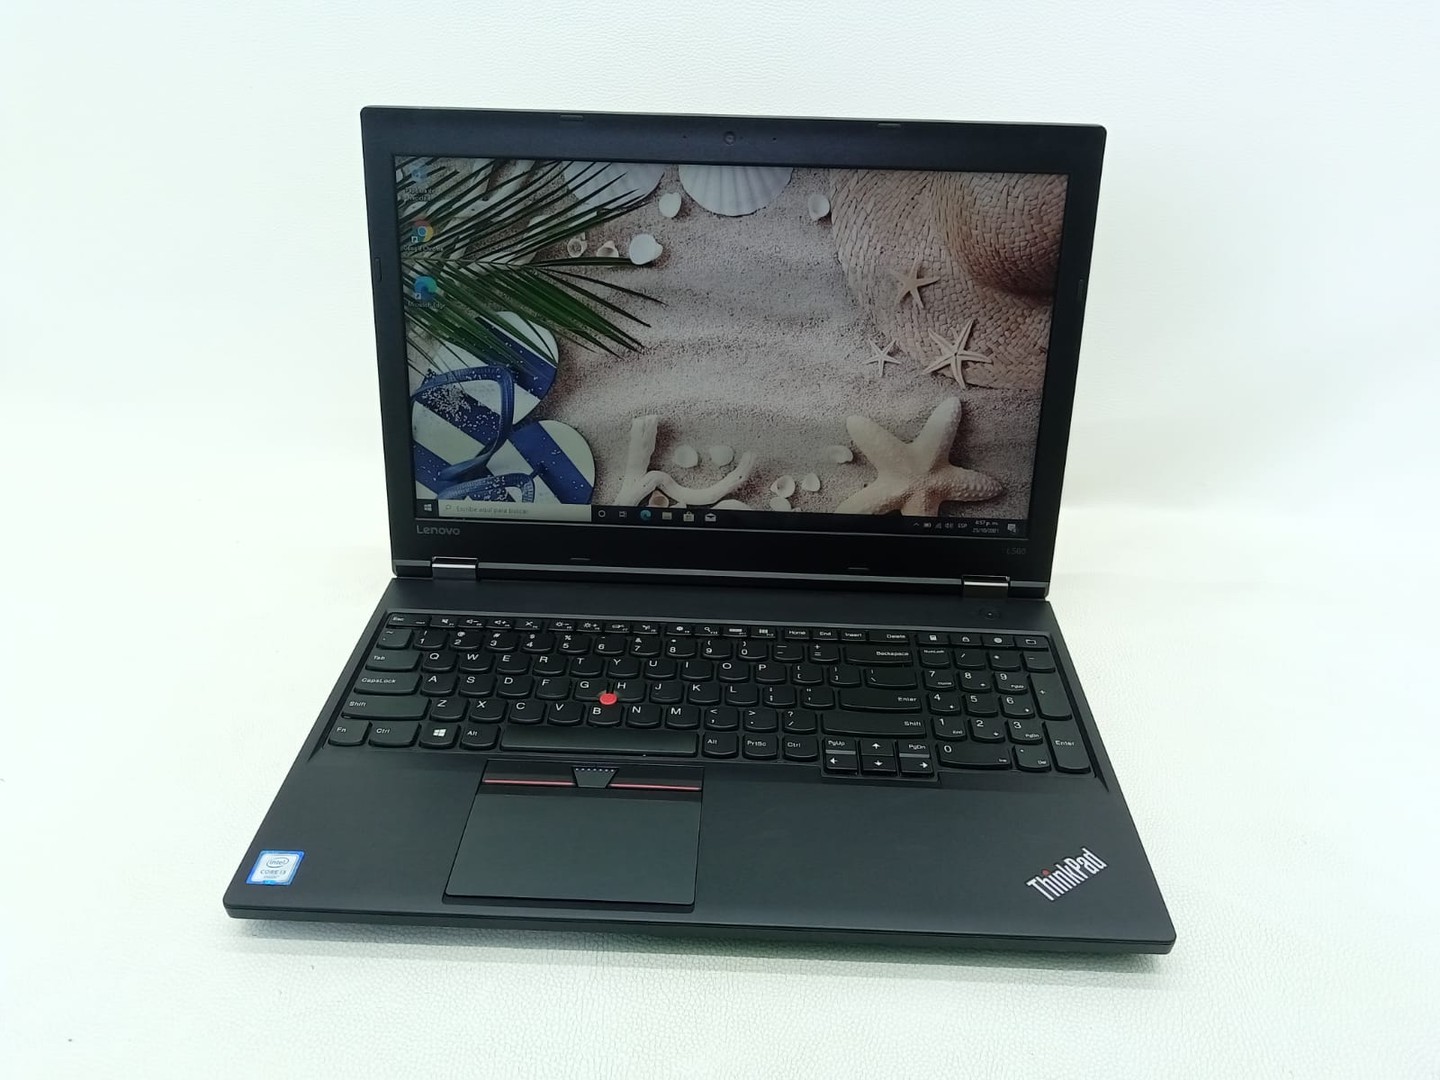 computadoras y laptops - Laptop Lenovo ThinkPad L560 Core i3 500GB HDD 8GB RAM (Incluye Mouse y Mochila)